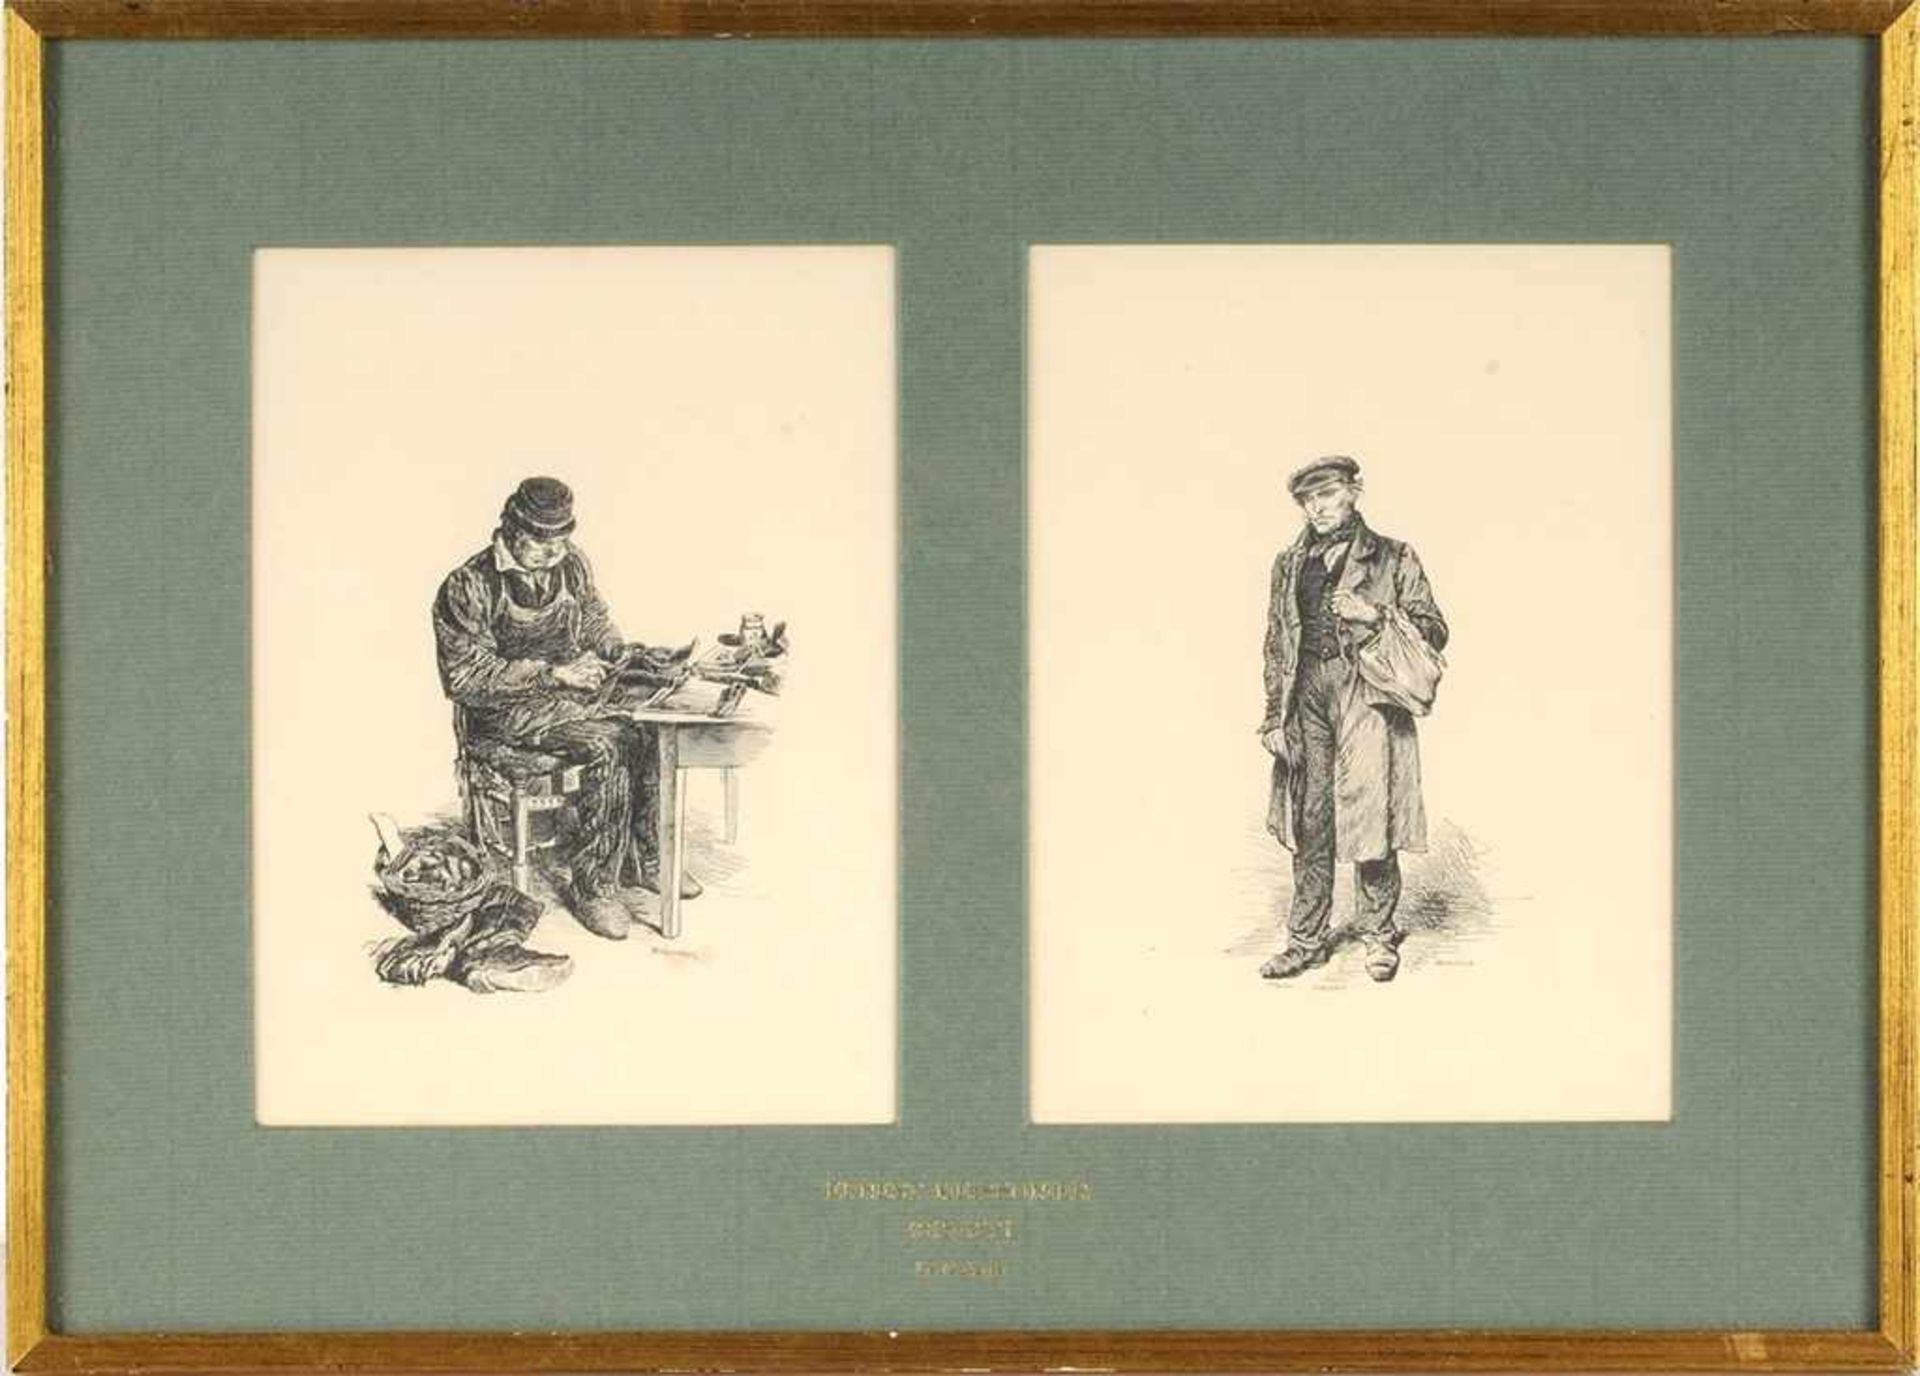 Meissonier, Ernest (1815 Lyon - 1891 Paris) Lithographie. "Le Gniaffe". Illustrierte Geschichte.